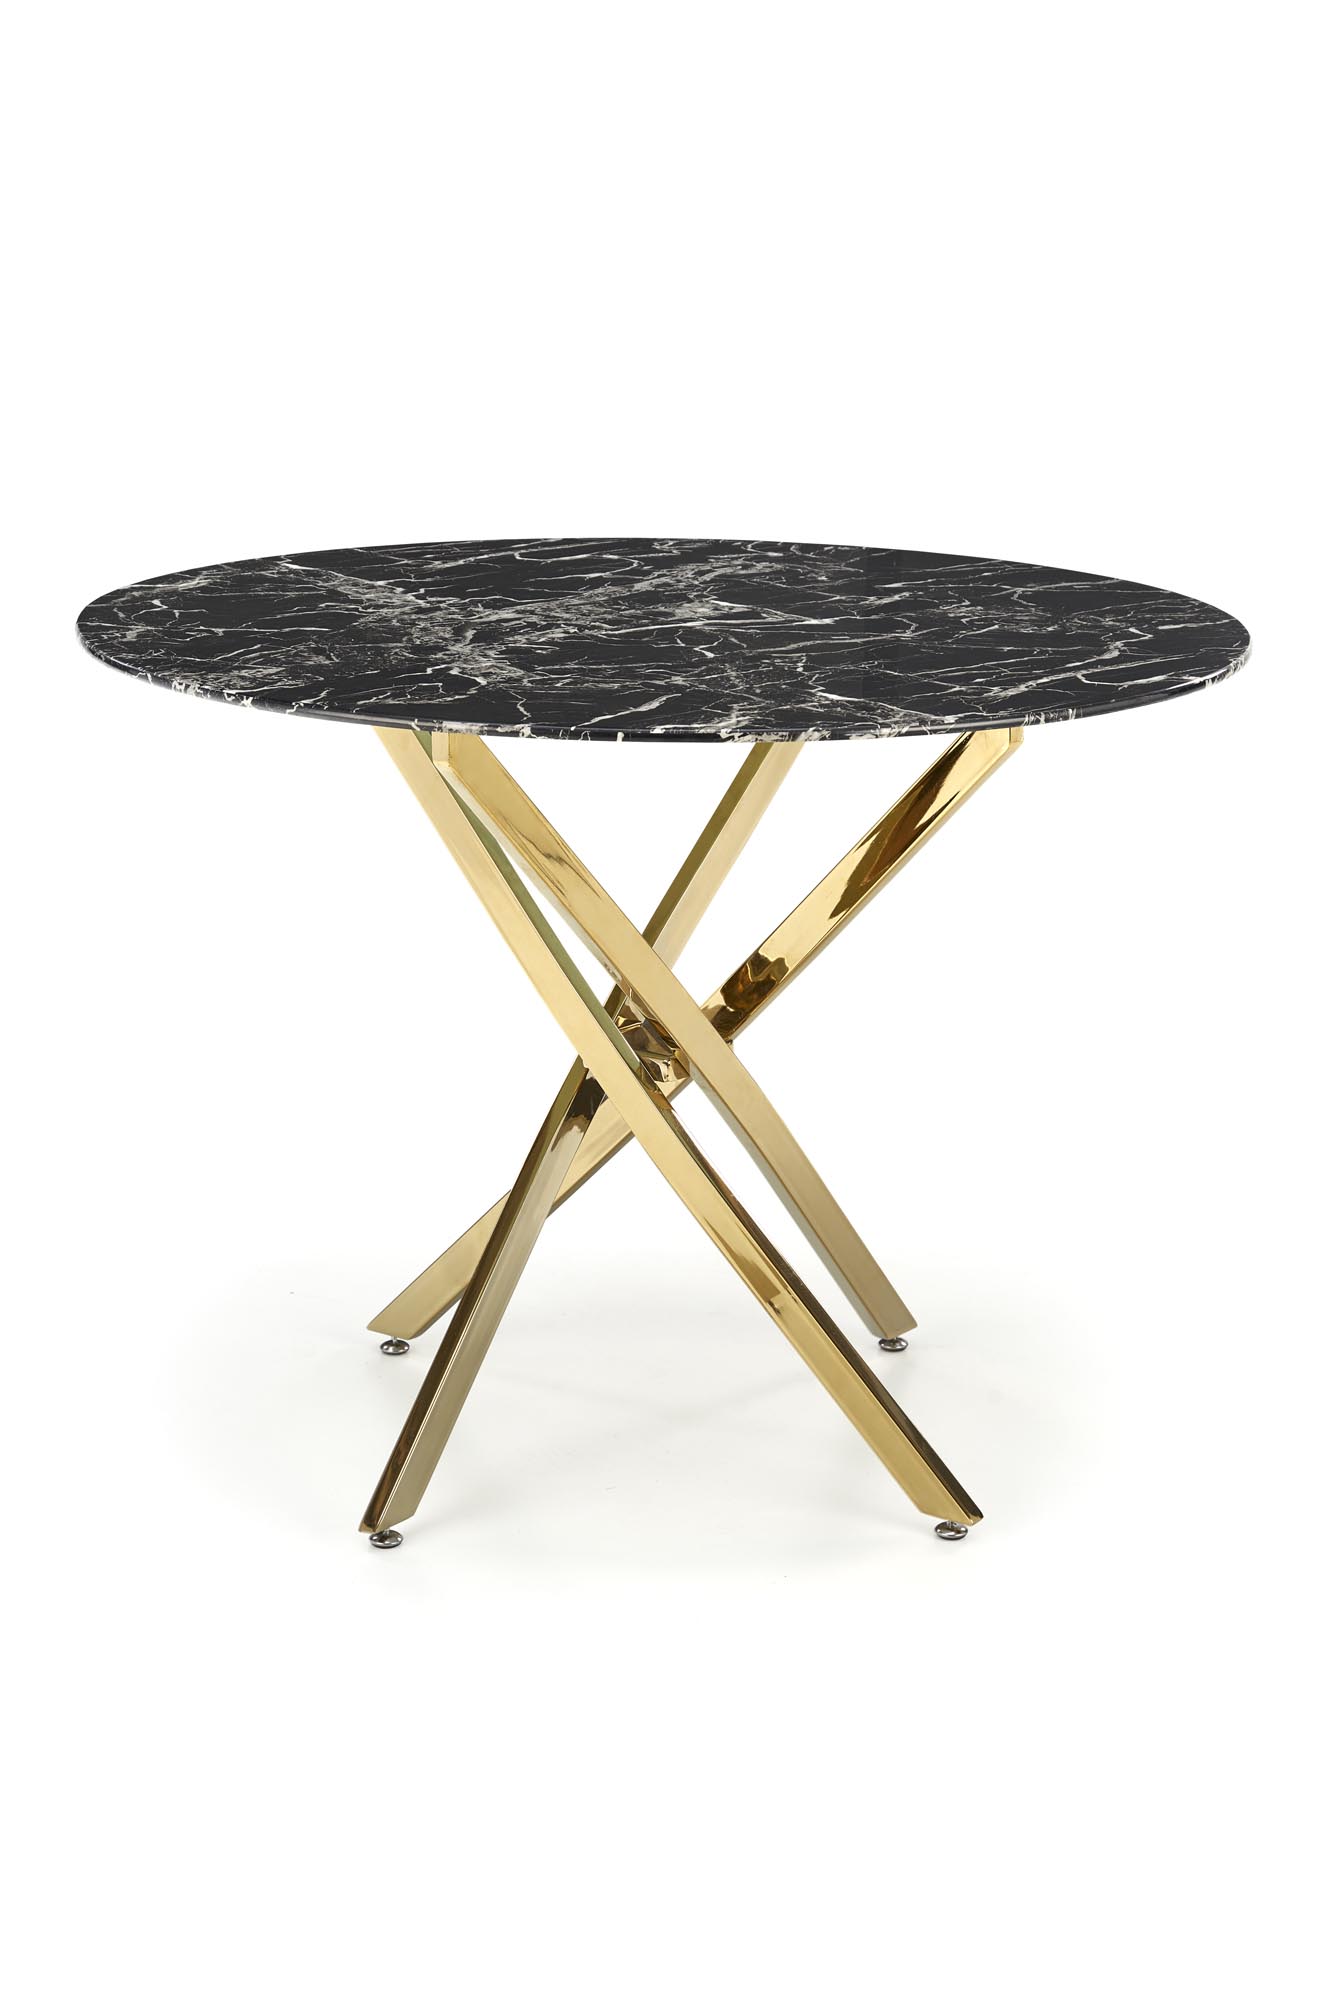 RAYMOND 2 stôl, Pracovná doska - Čierny mramor, Nohy - zlaté (2p=1szt) Stôl raymond 2 - Čierny mramor / zlaté